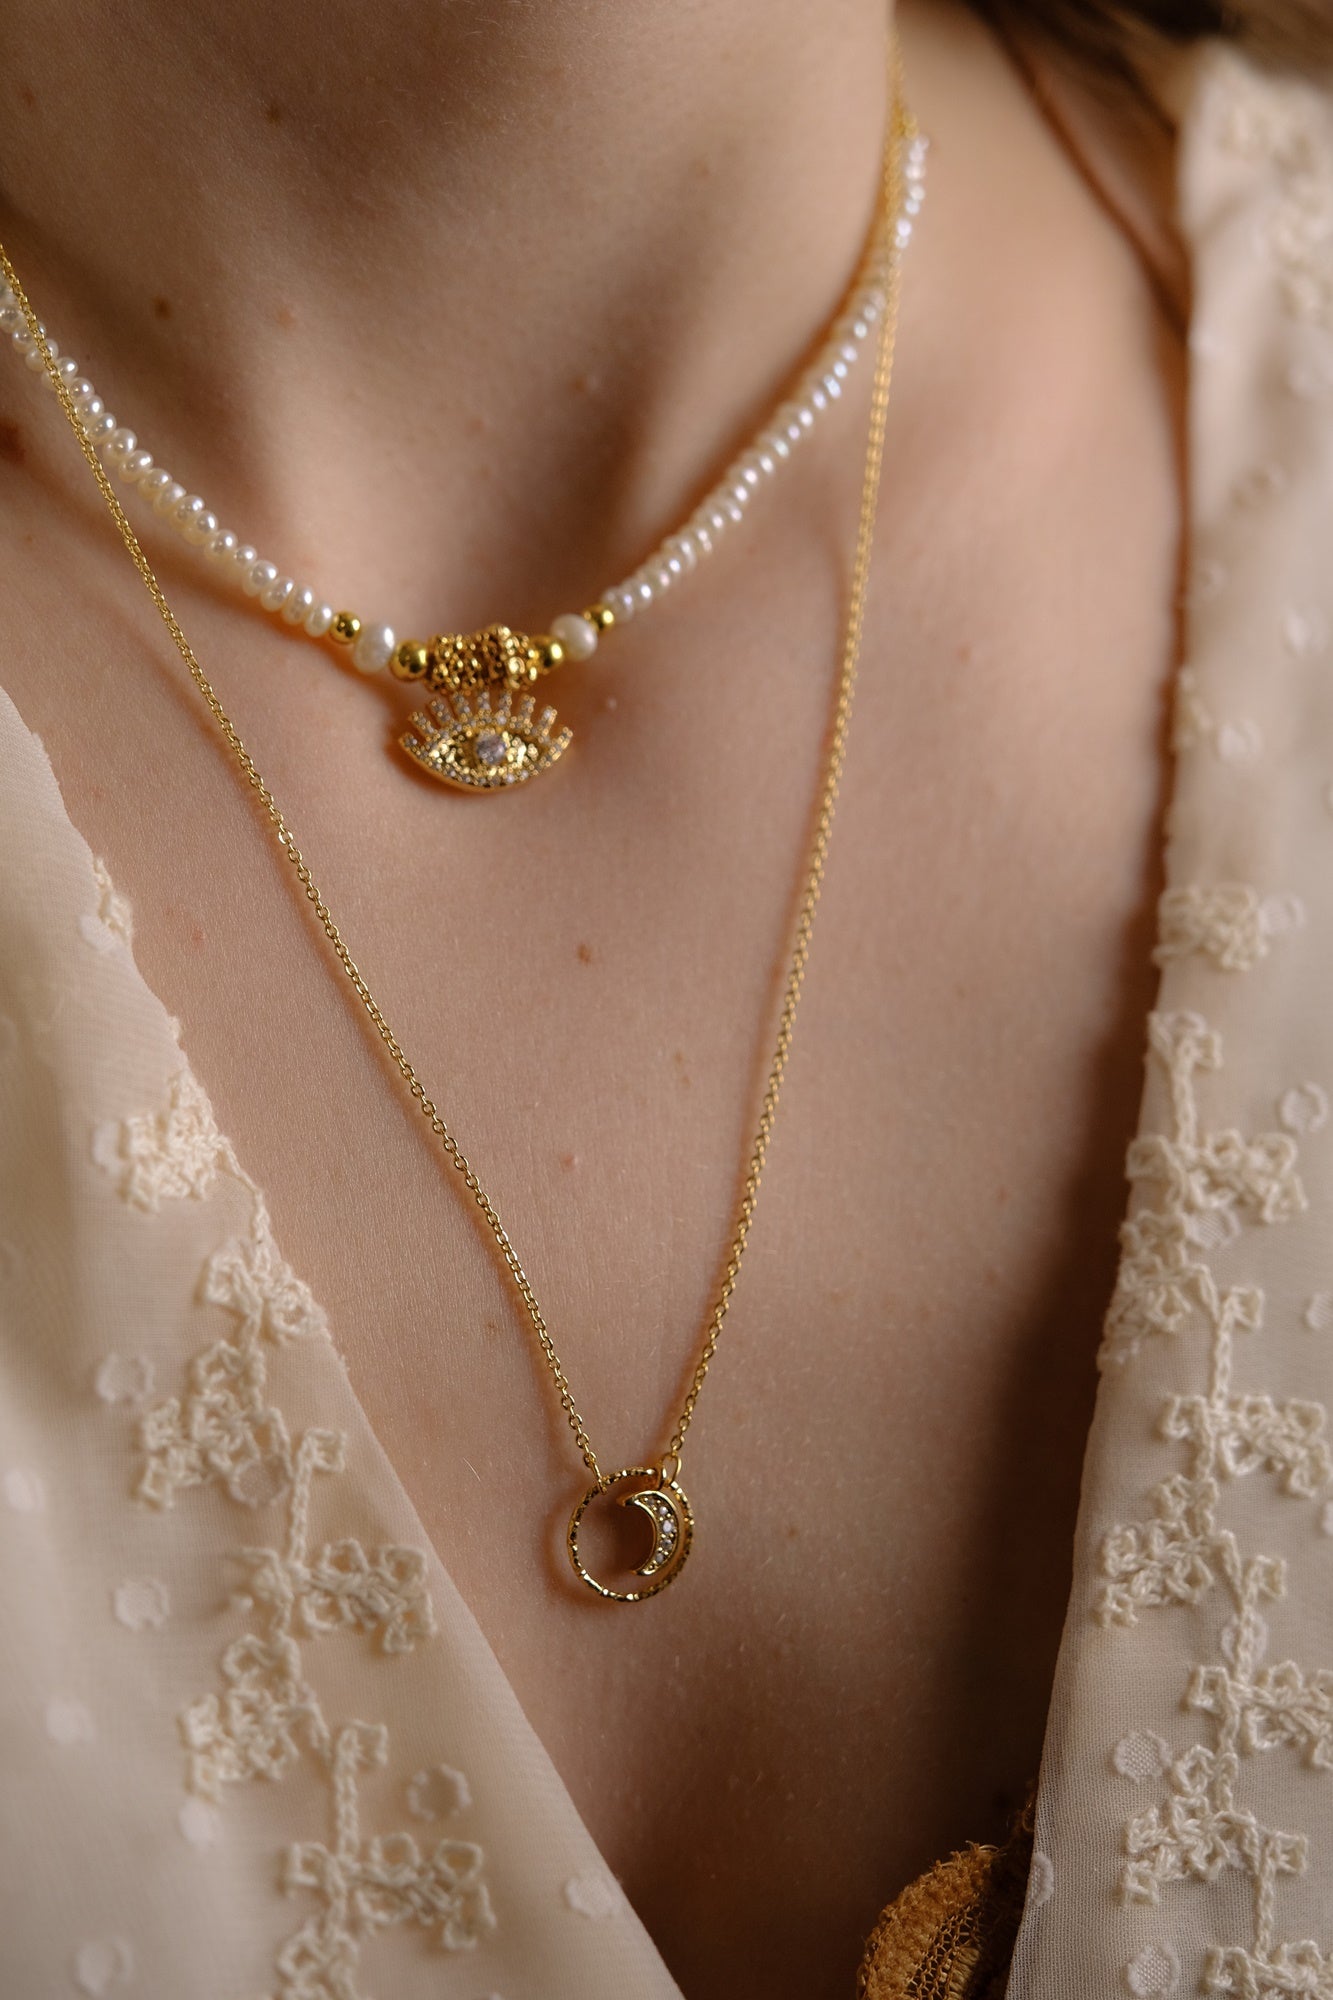 “Eros” necklace